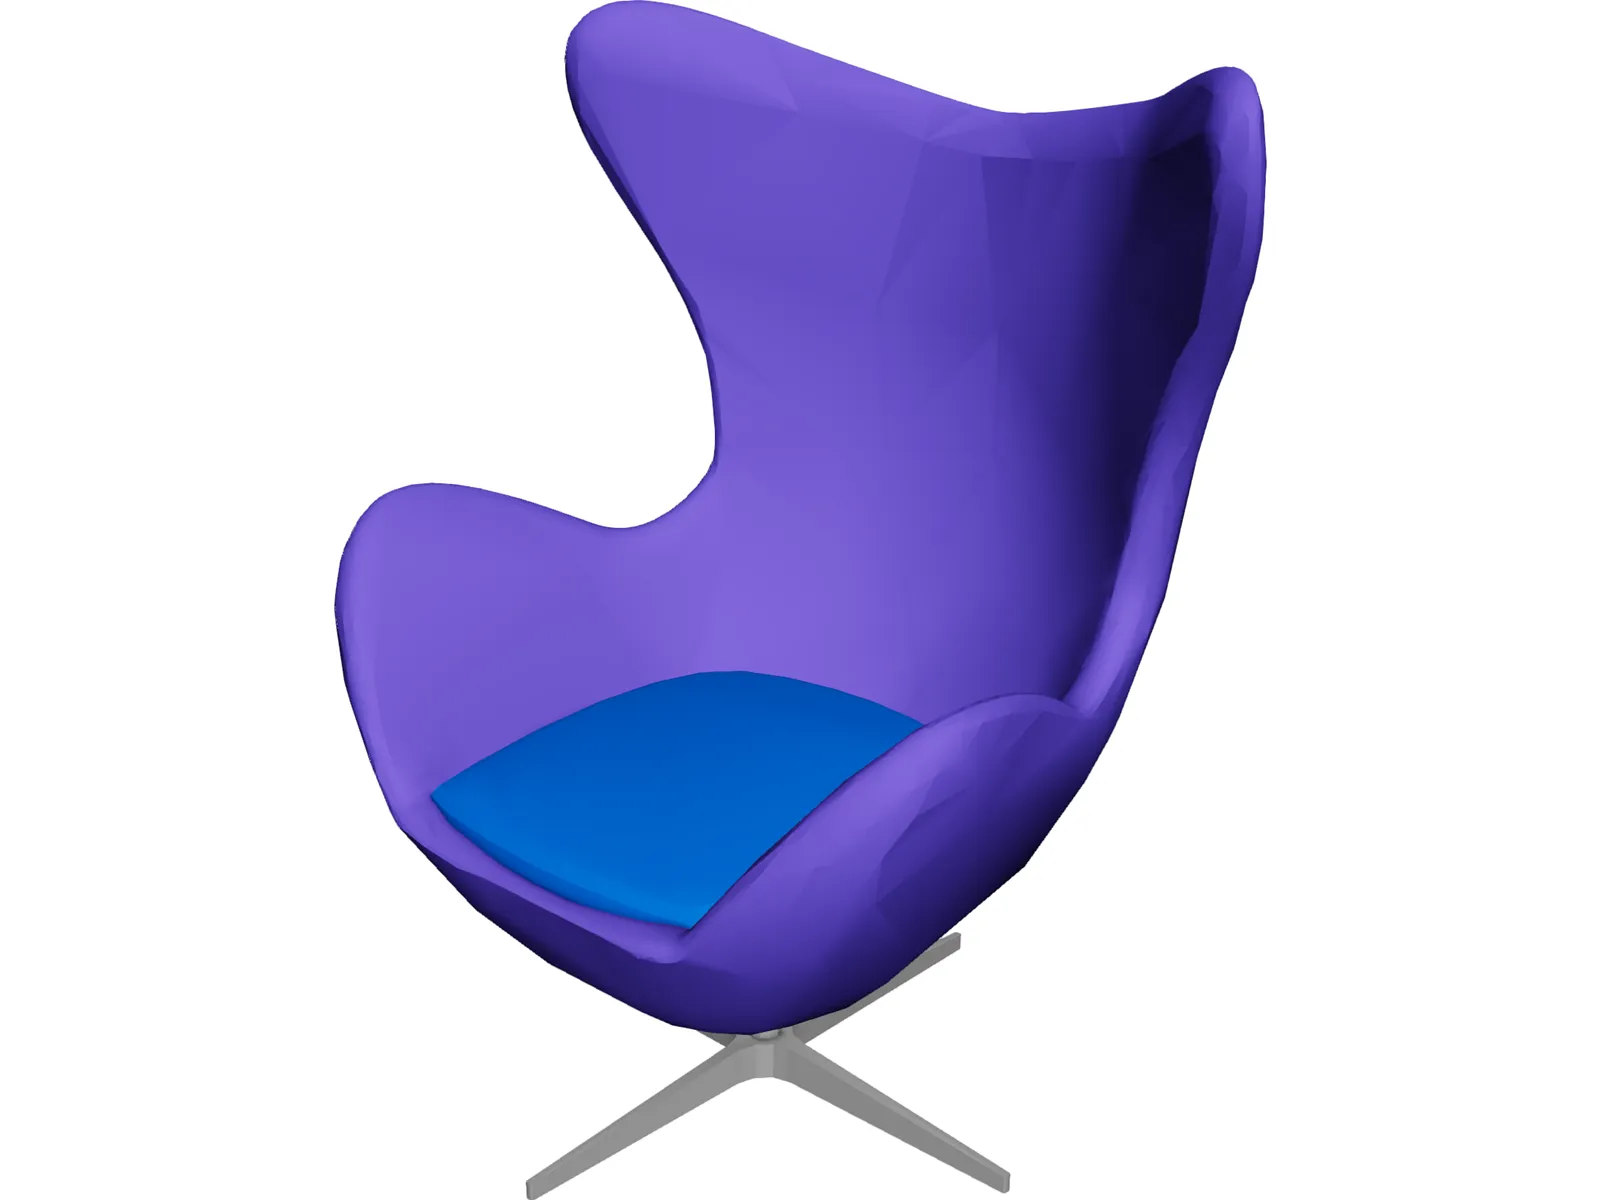 Egg Chair 3316 [Arne Jacobsen Classic] 3D Model